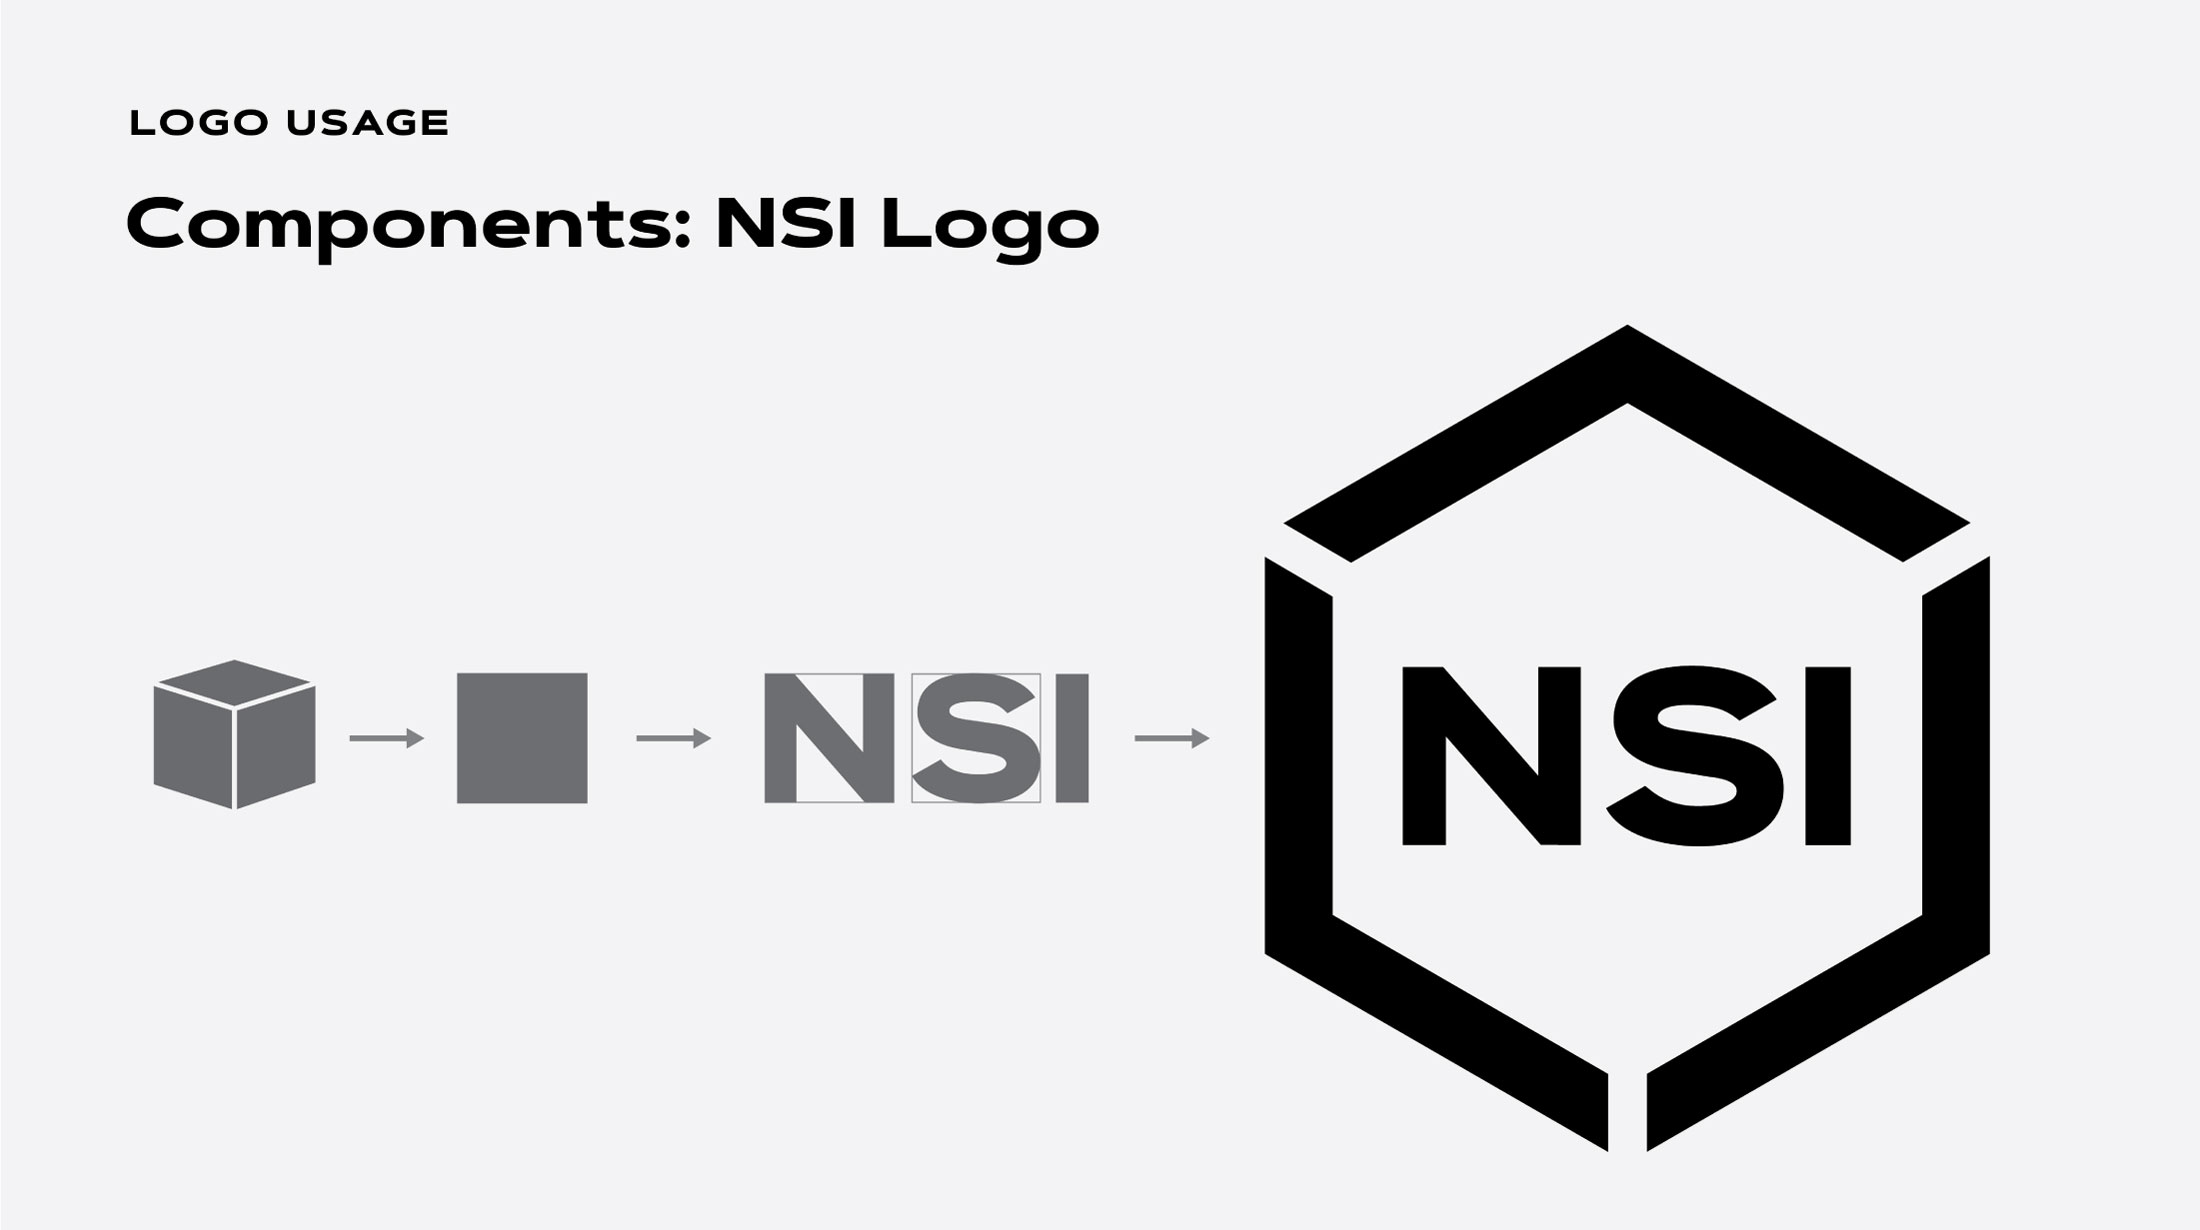 NSI logo components